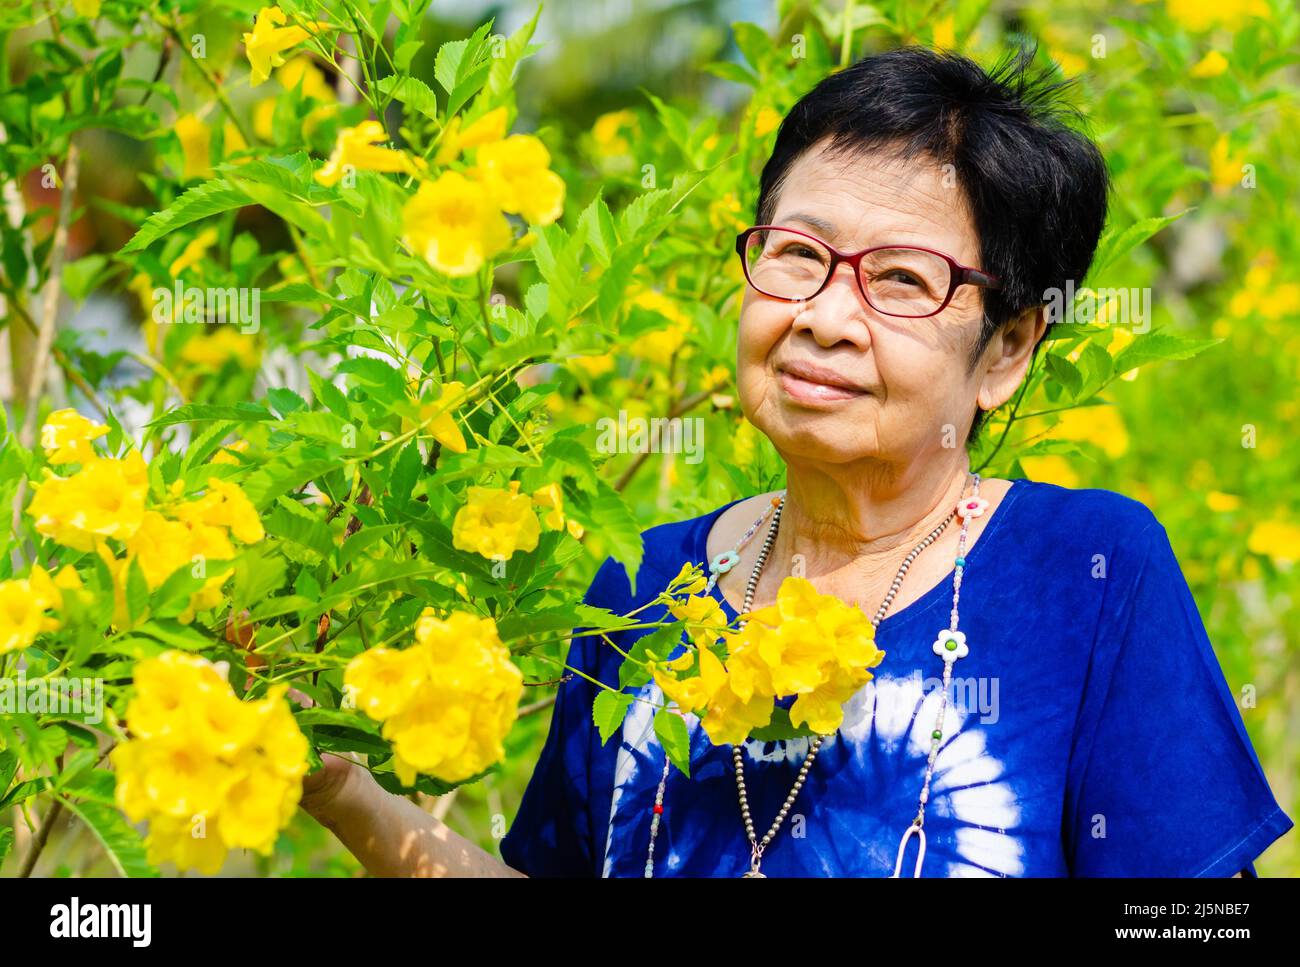 Ritratto di bella sorridente donna asiatica con fiore backgorund. Giornata internazionale delle persone anziane concetto. Foto Stock